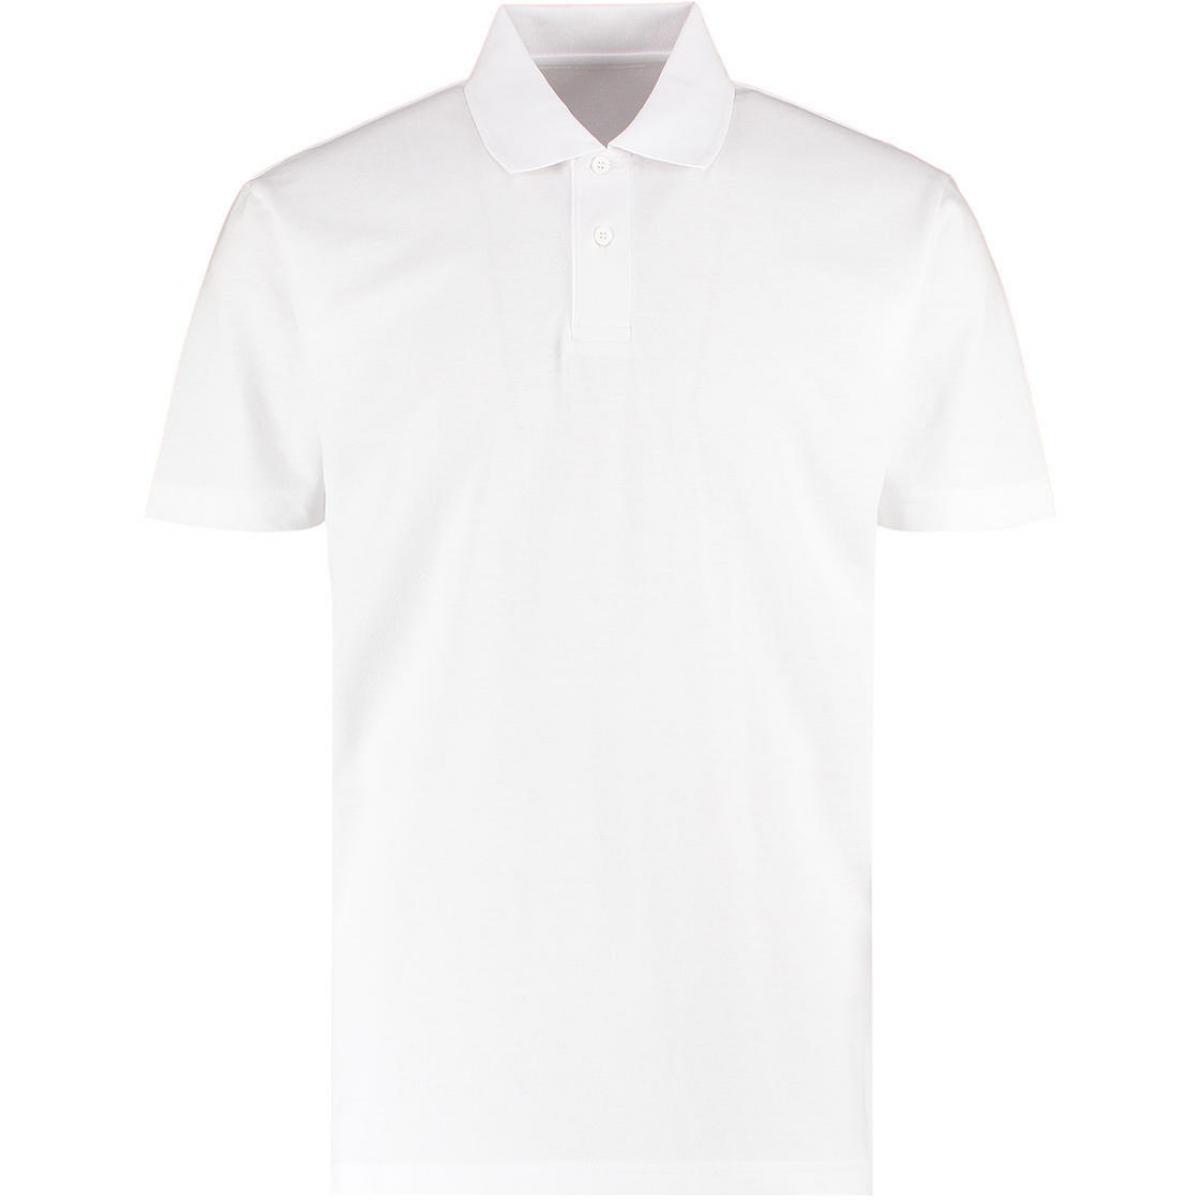 Hersteller: Kustom Kit Herstellernummer: KK422 Artikelbezeichnung: Men's Regular Fit Workforce Poloshirt für Herren Farbe: White